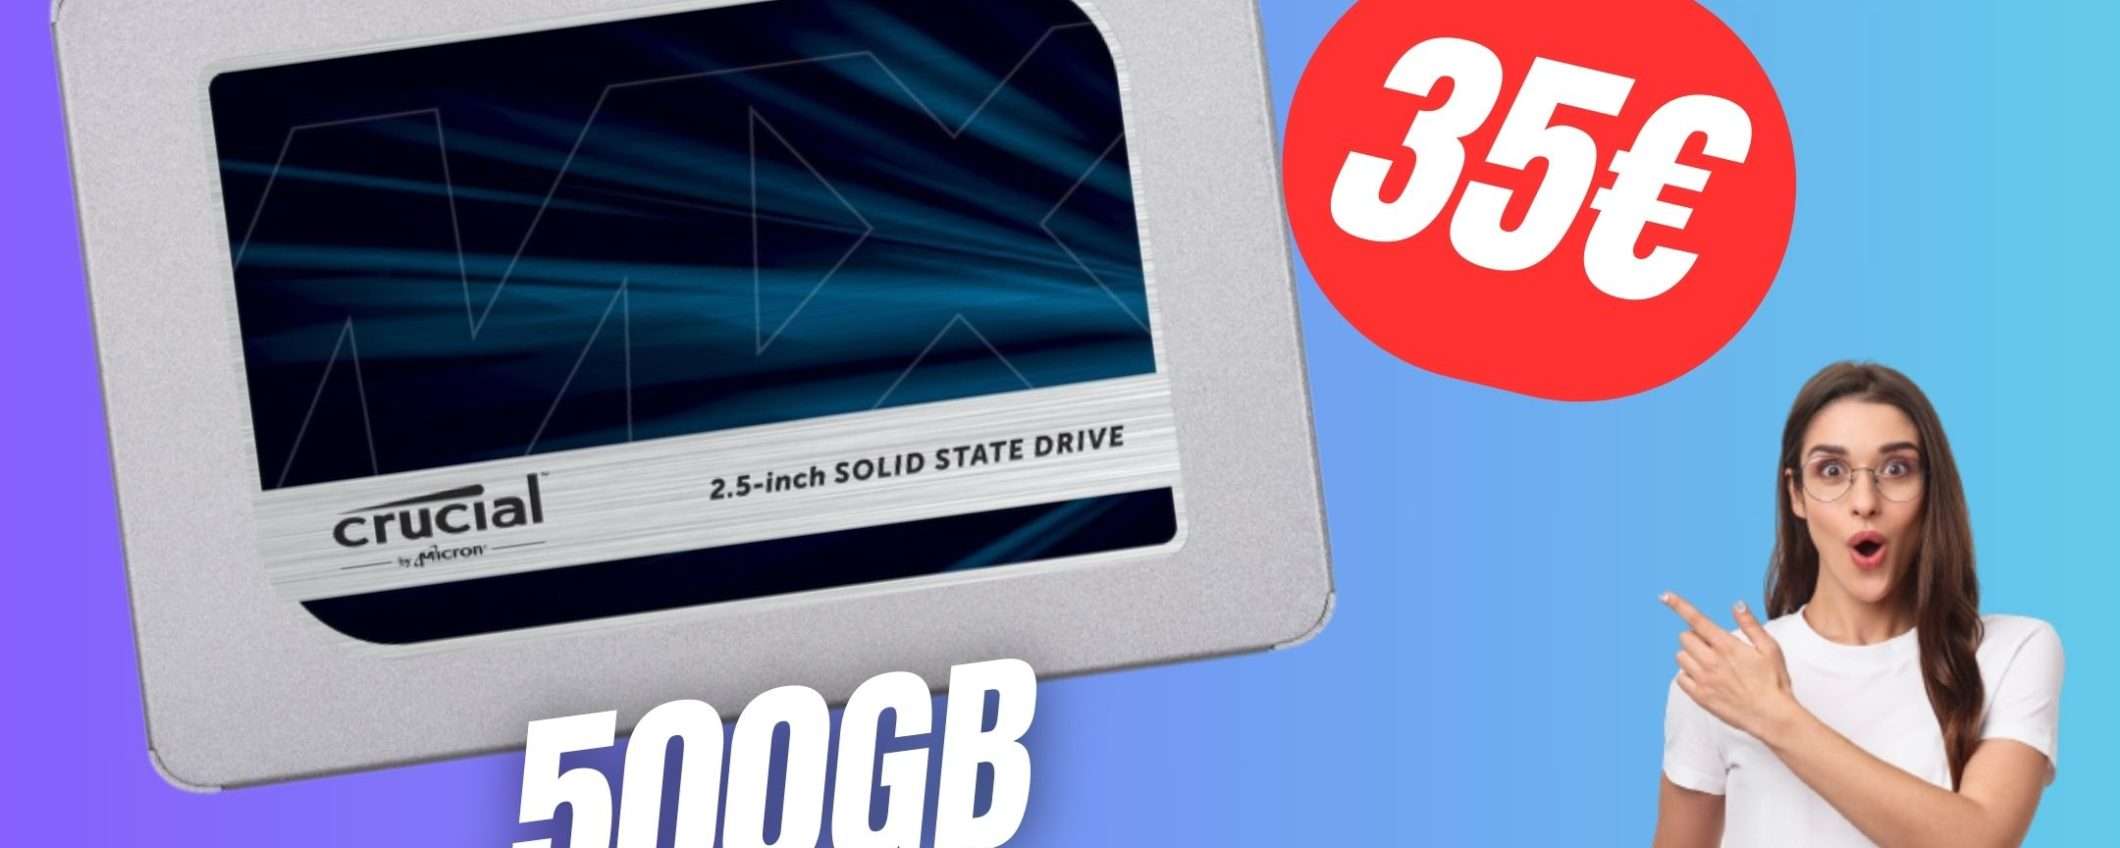 Aumenta le prestazioni del tuo PC con soli 35€ grazie all'SSD Crucial!